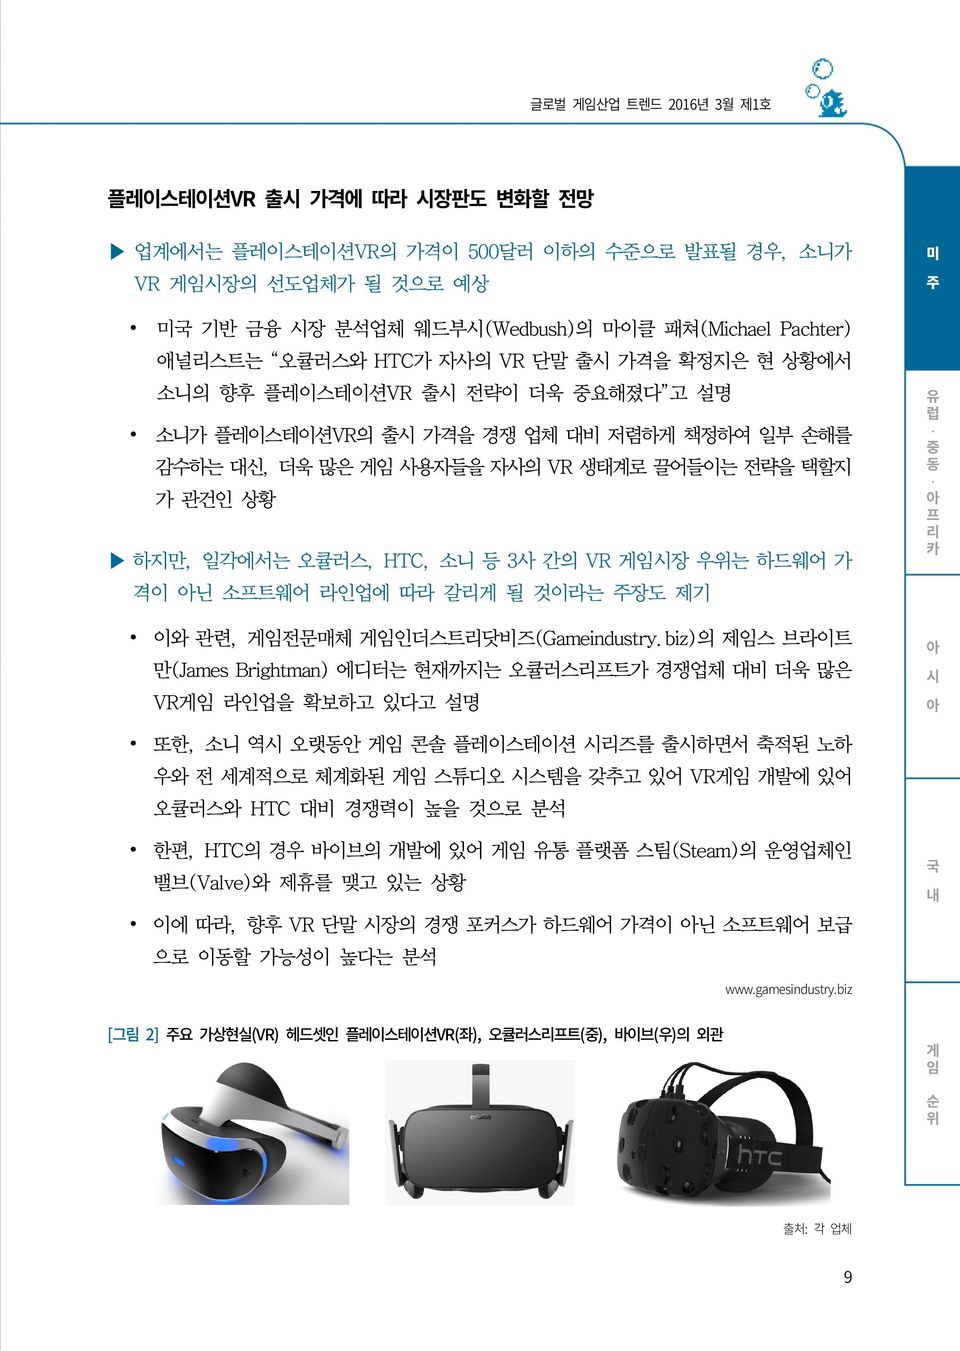 HTC, 소니 등 3사 간의 VR 게임시장 우위는 하드웨어 가 격이 닌 소프트웨어 라인업에 따라 갈리게 될 것이라는 주장도 제기 이와 관련, 게임전문매체 게임인더스트리닷비즈(Gameindustry.